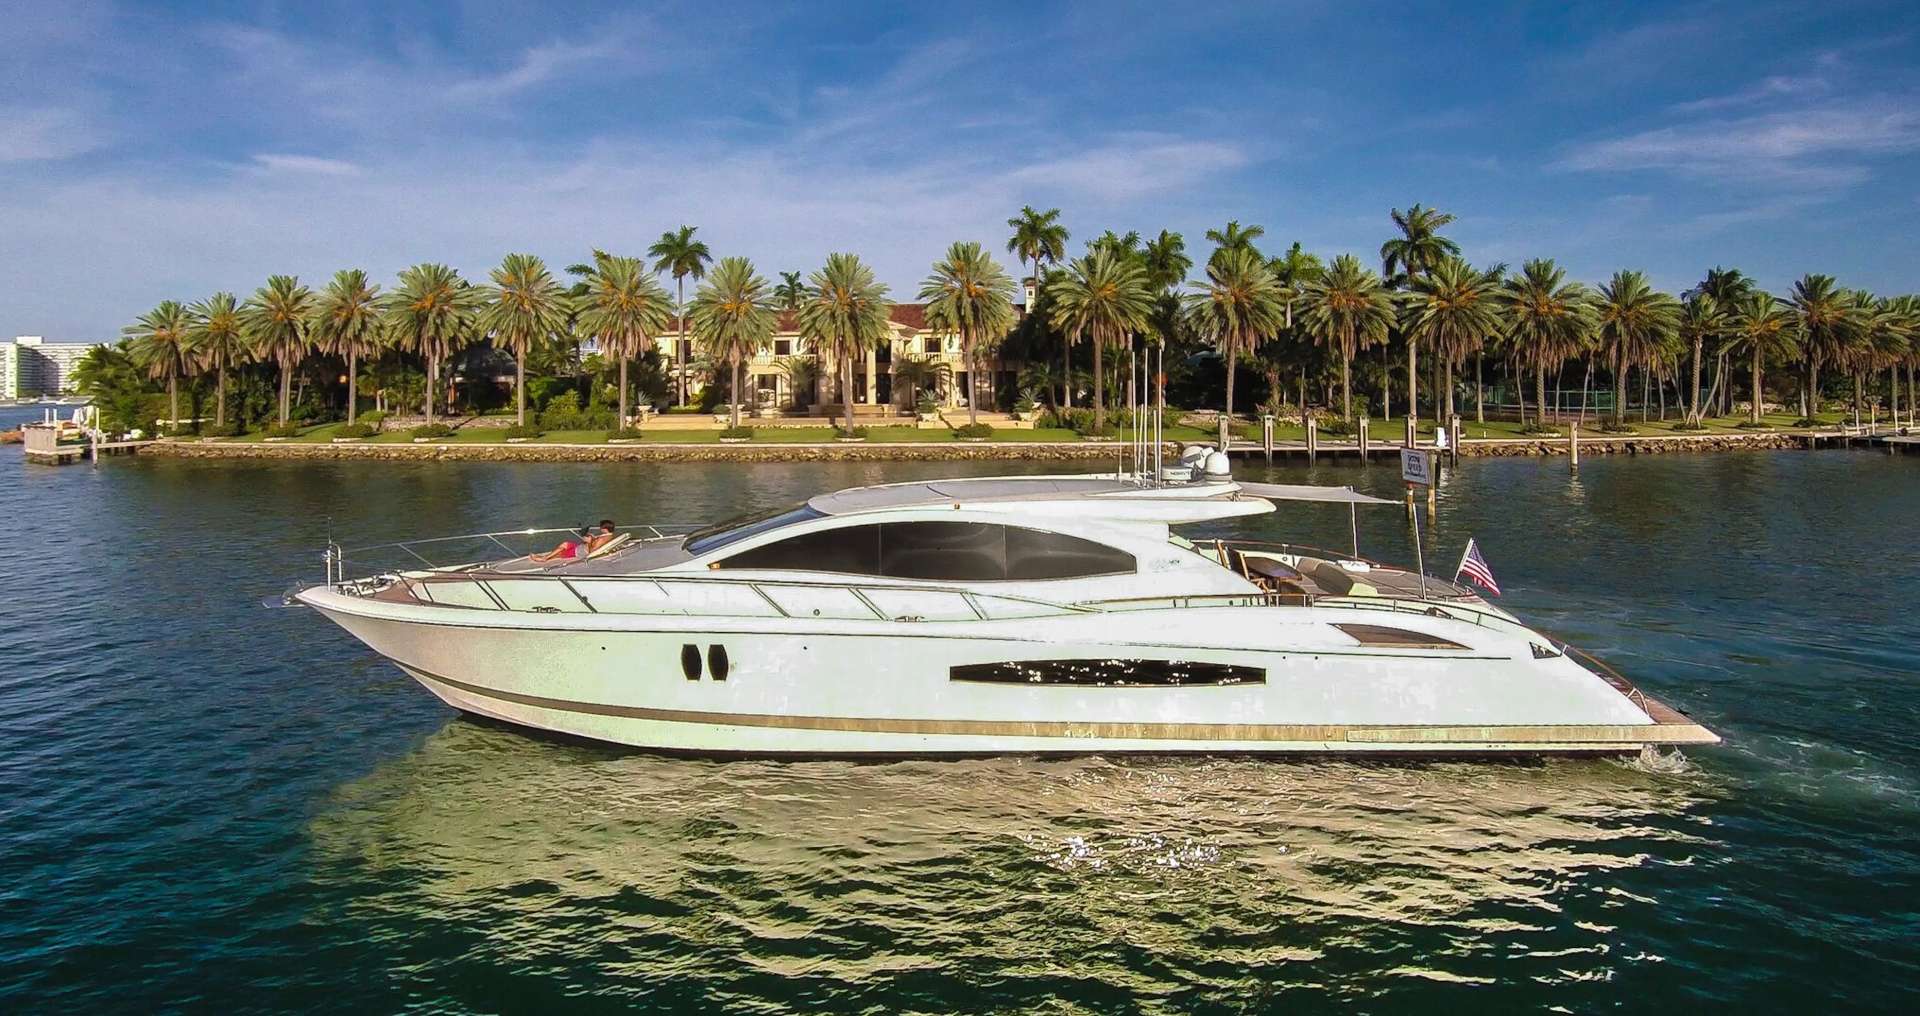 CD - Motor Boat Charter USA & Boat hire in United States Florida Miami Port Miami 1